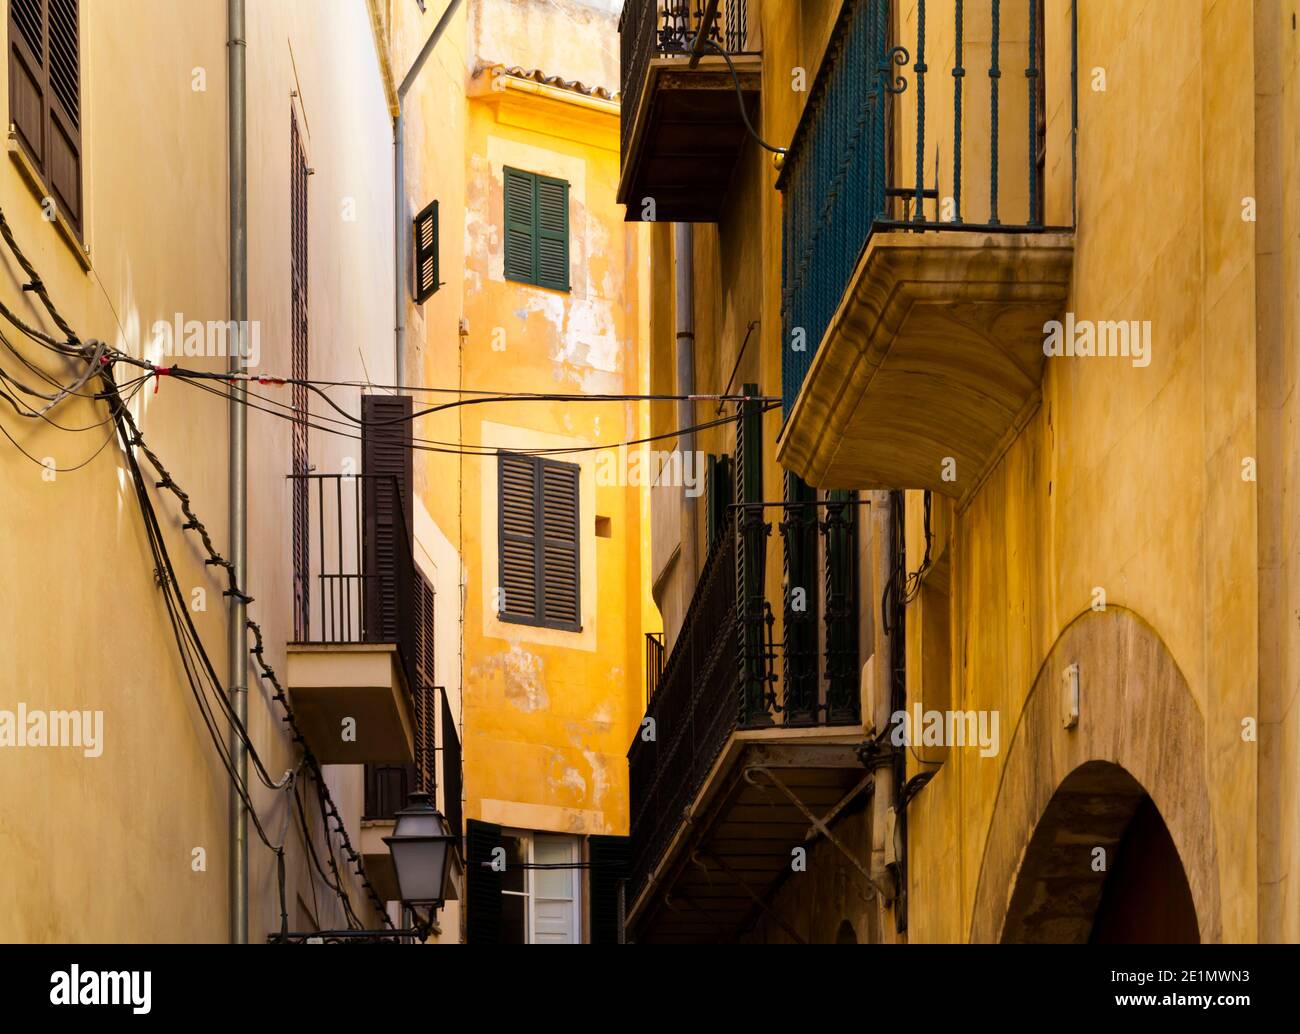 Strade strette con case e finestre chiuse nel SA Portella del centro storico di Palma Mallorca Isole Baleari Spagna Foto Stock